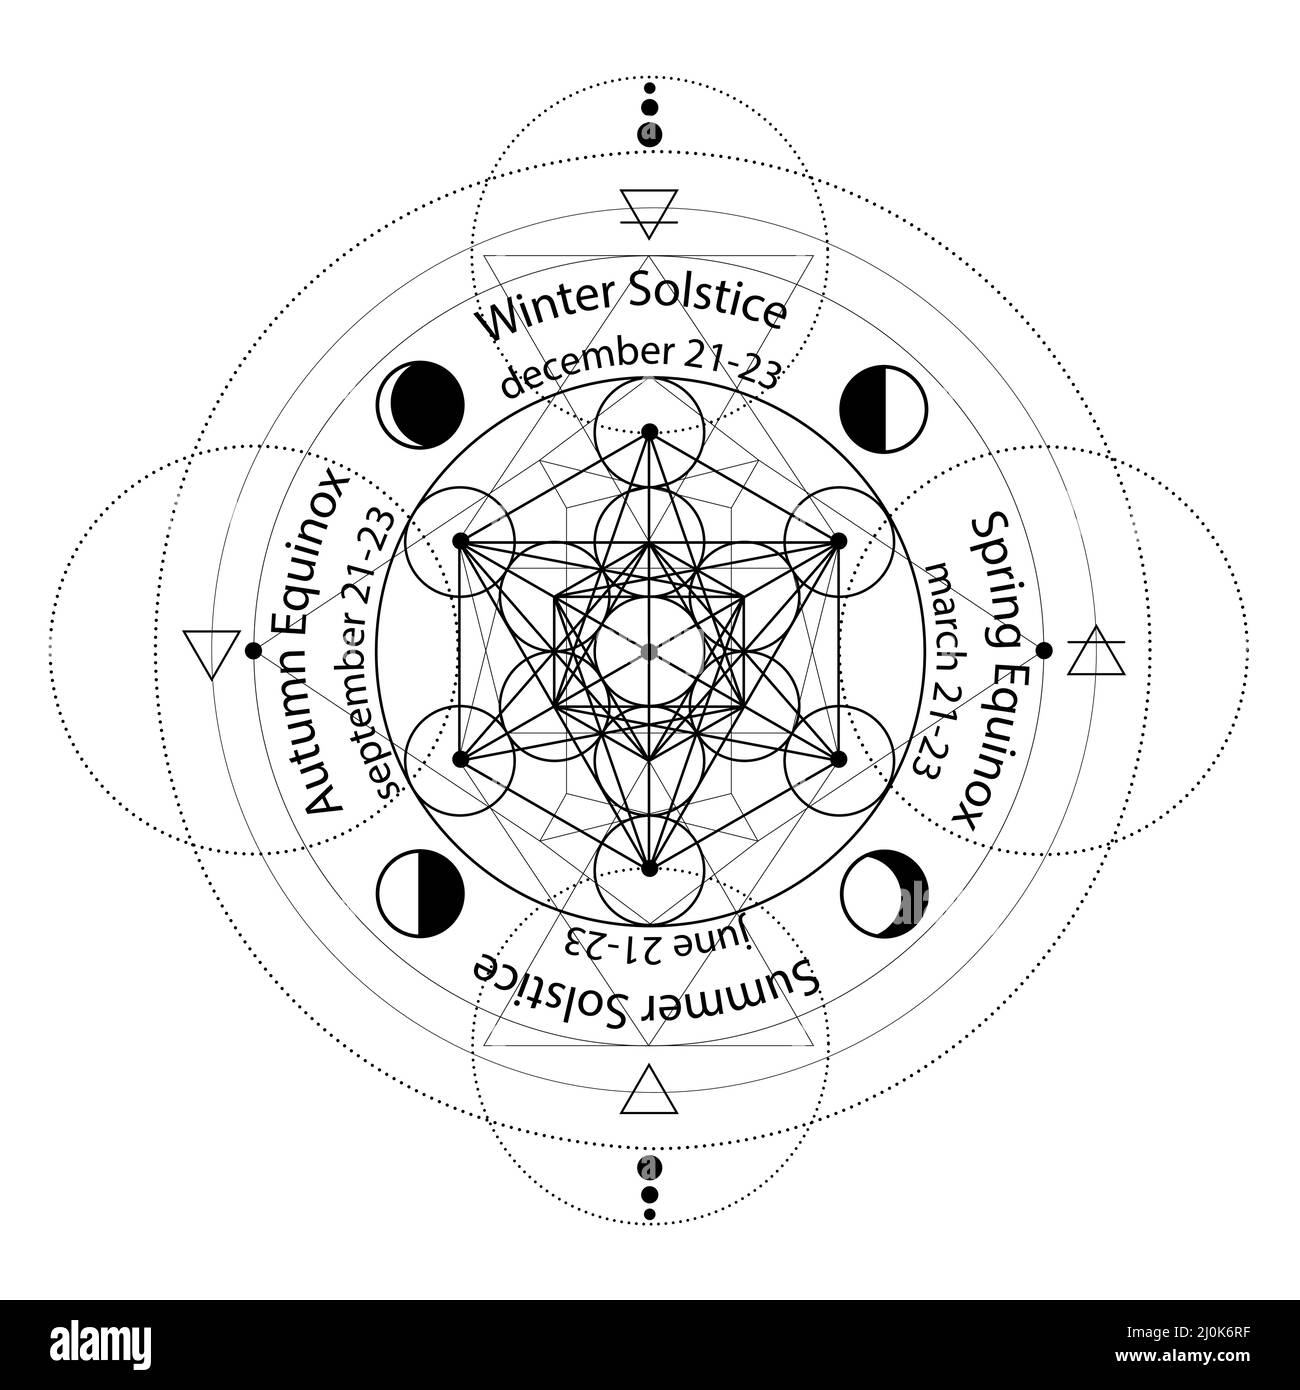 cerchio di solstice ed equinox stilizzato come disegno geometrico lineare con linee sottili nere su sfondo bianco con datteri e nomi, quattro elementi, aria, Illustrazione Vettoriale